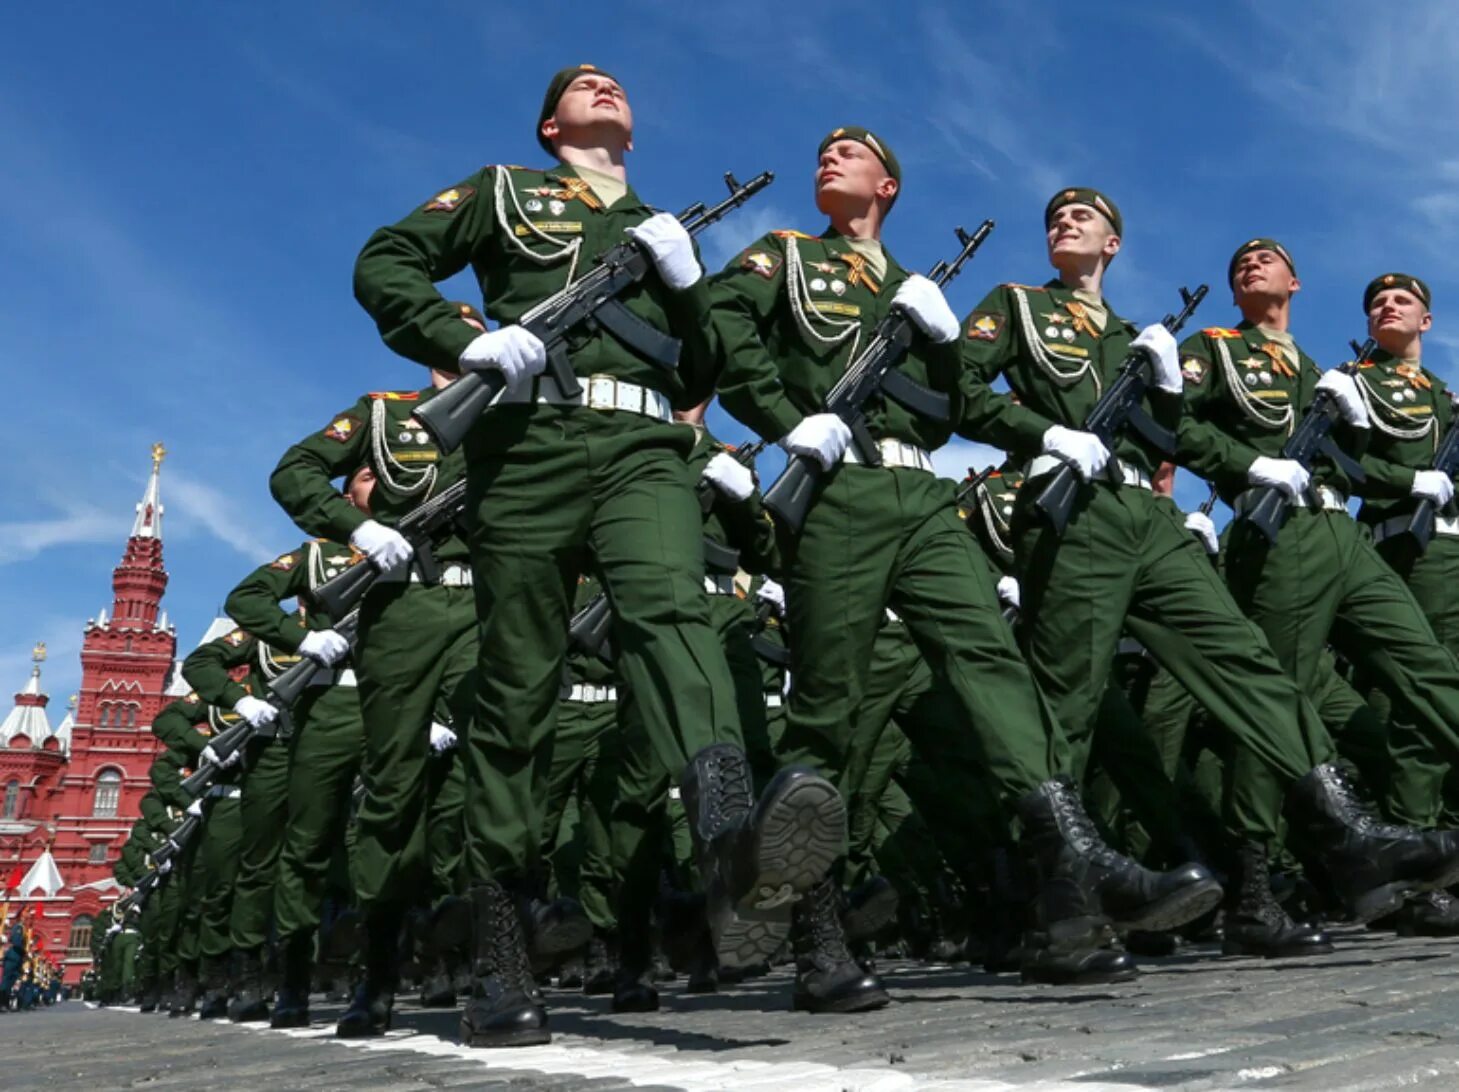 Солдаты на параде. Российский солдат на параде. Русские солдаты на параде. Современная Российская армия. Отряд шагает в ряд